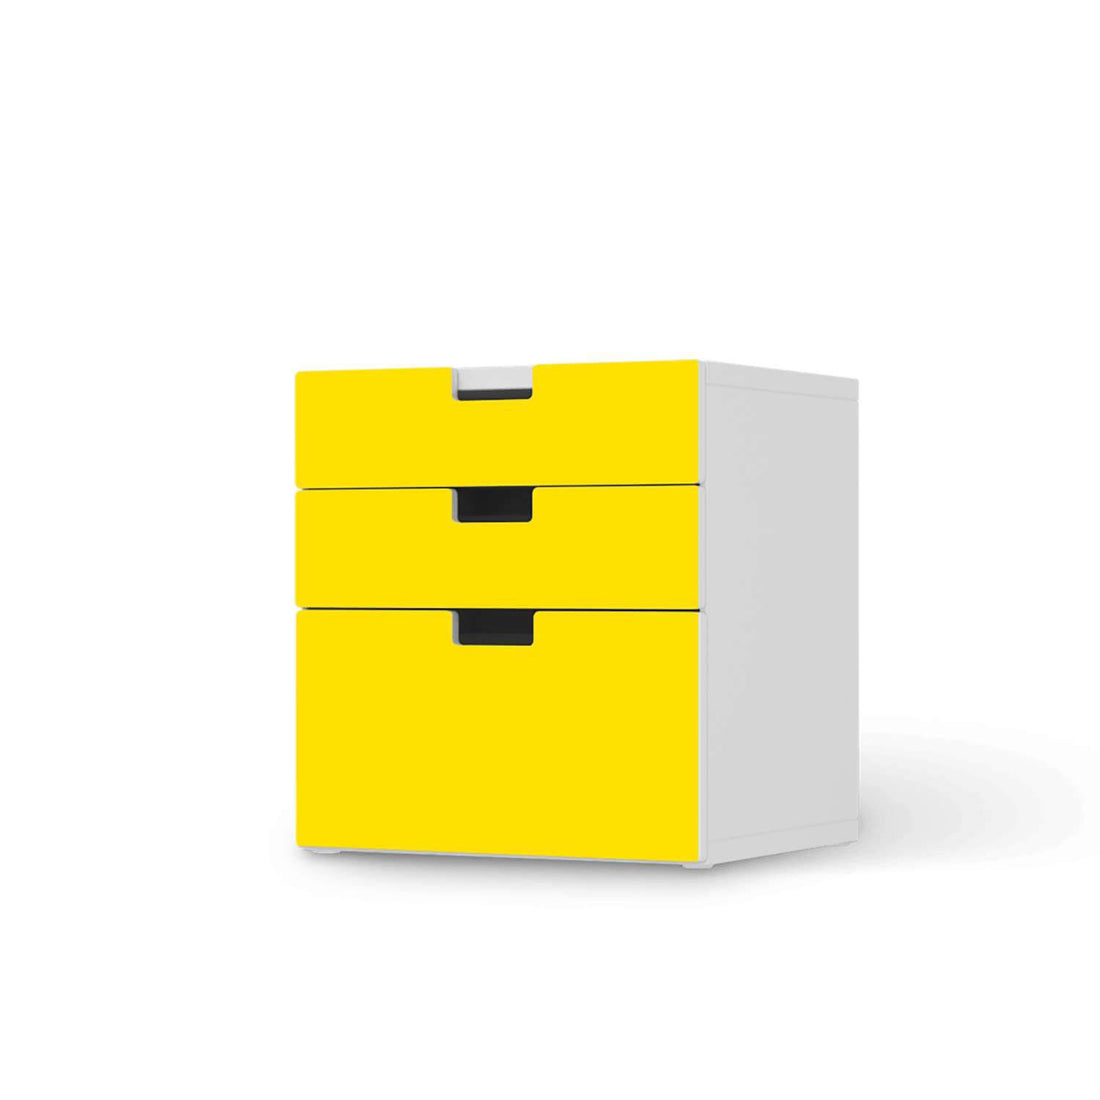 Folie für Möbel Gelb Dark - IKEA Stuva Kommode - 3 Schubladen (Kombination 1)  - weiss